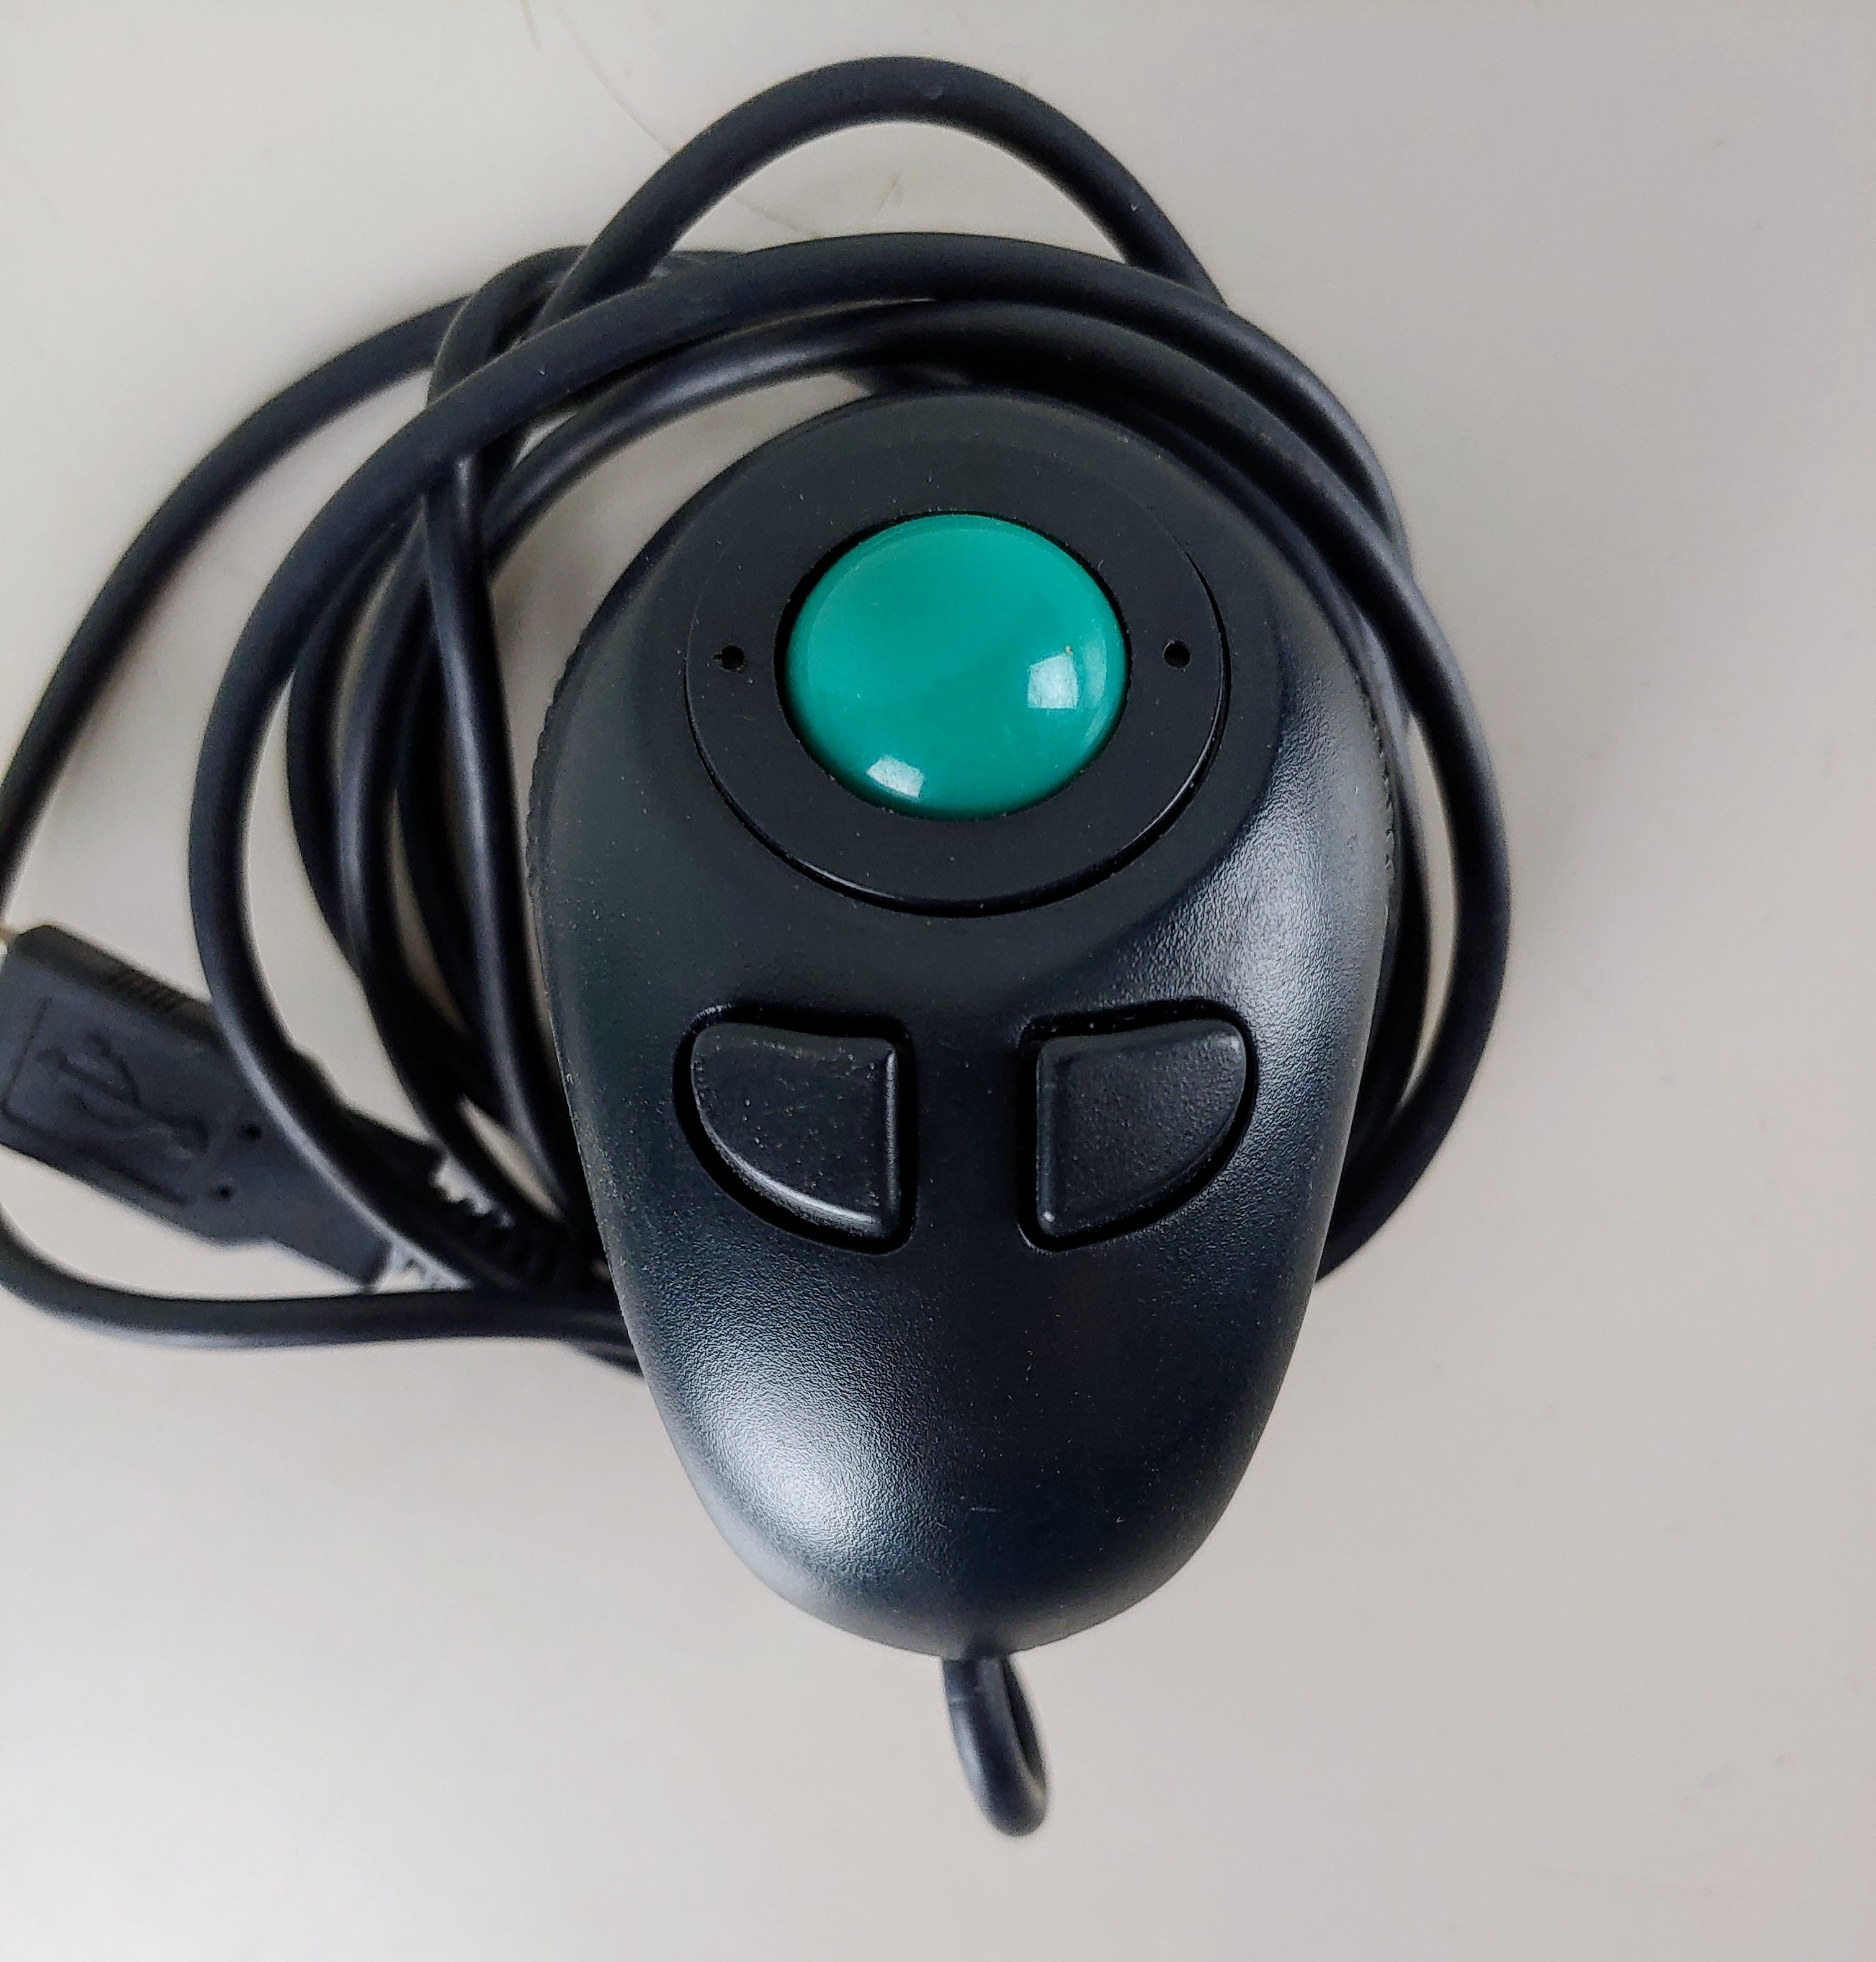 FDM-G50 Finger Held Trackball Mouse